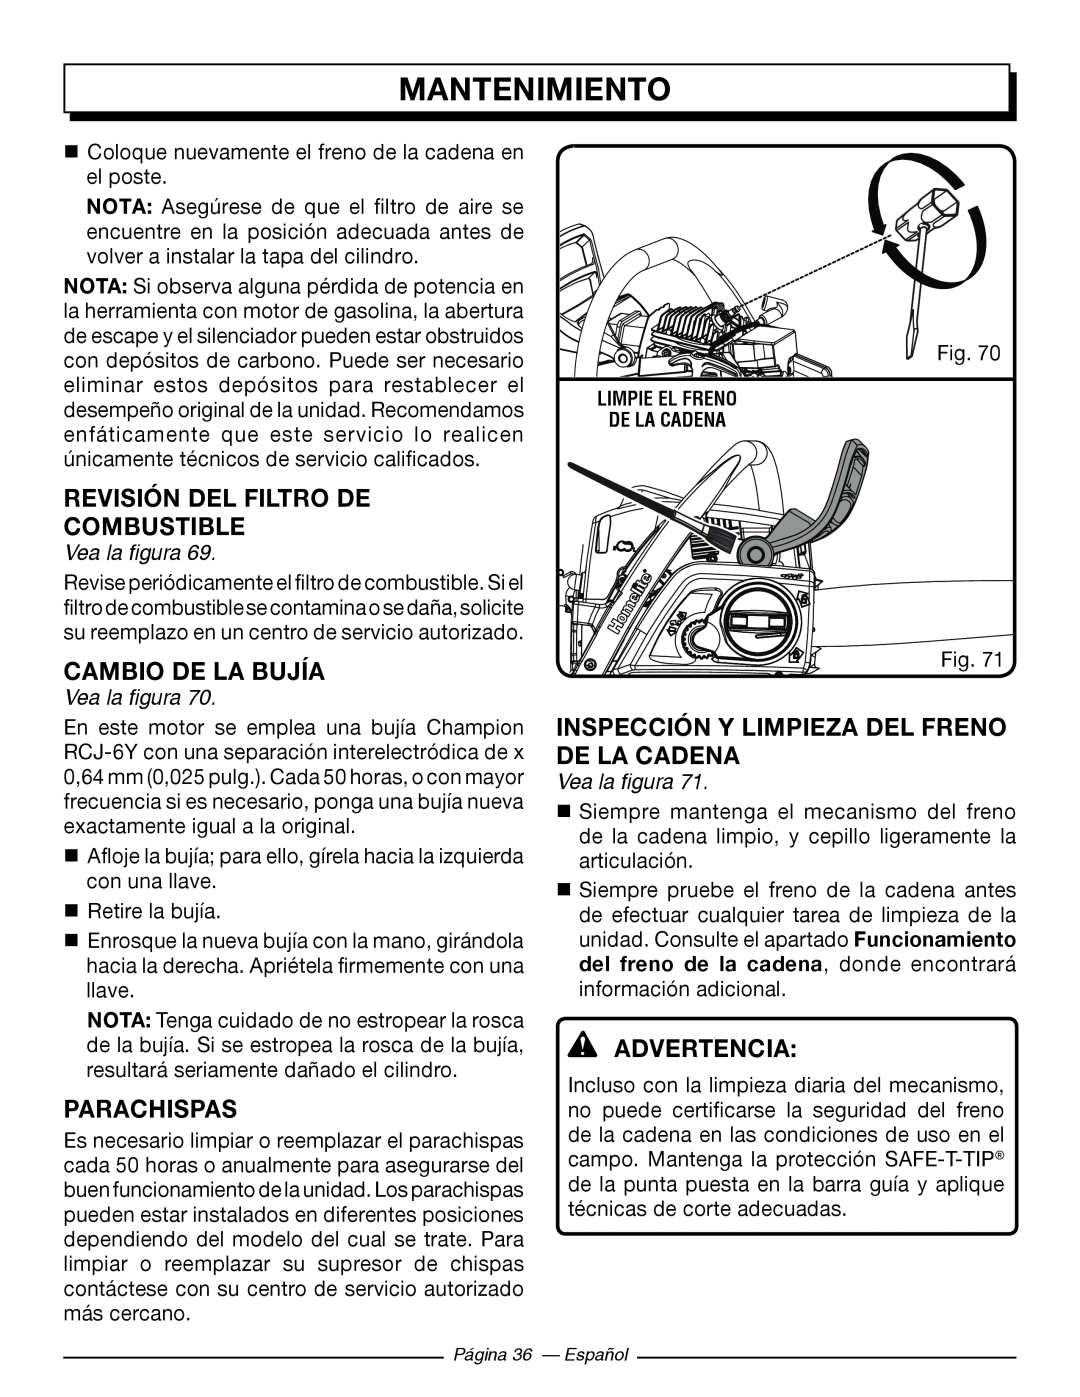 Homelite UT10586, UT10584 Revisión Del Filtro De Combustible, Cambio De La Bujía, Parachispas, Mantenimiento, Advertencia 